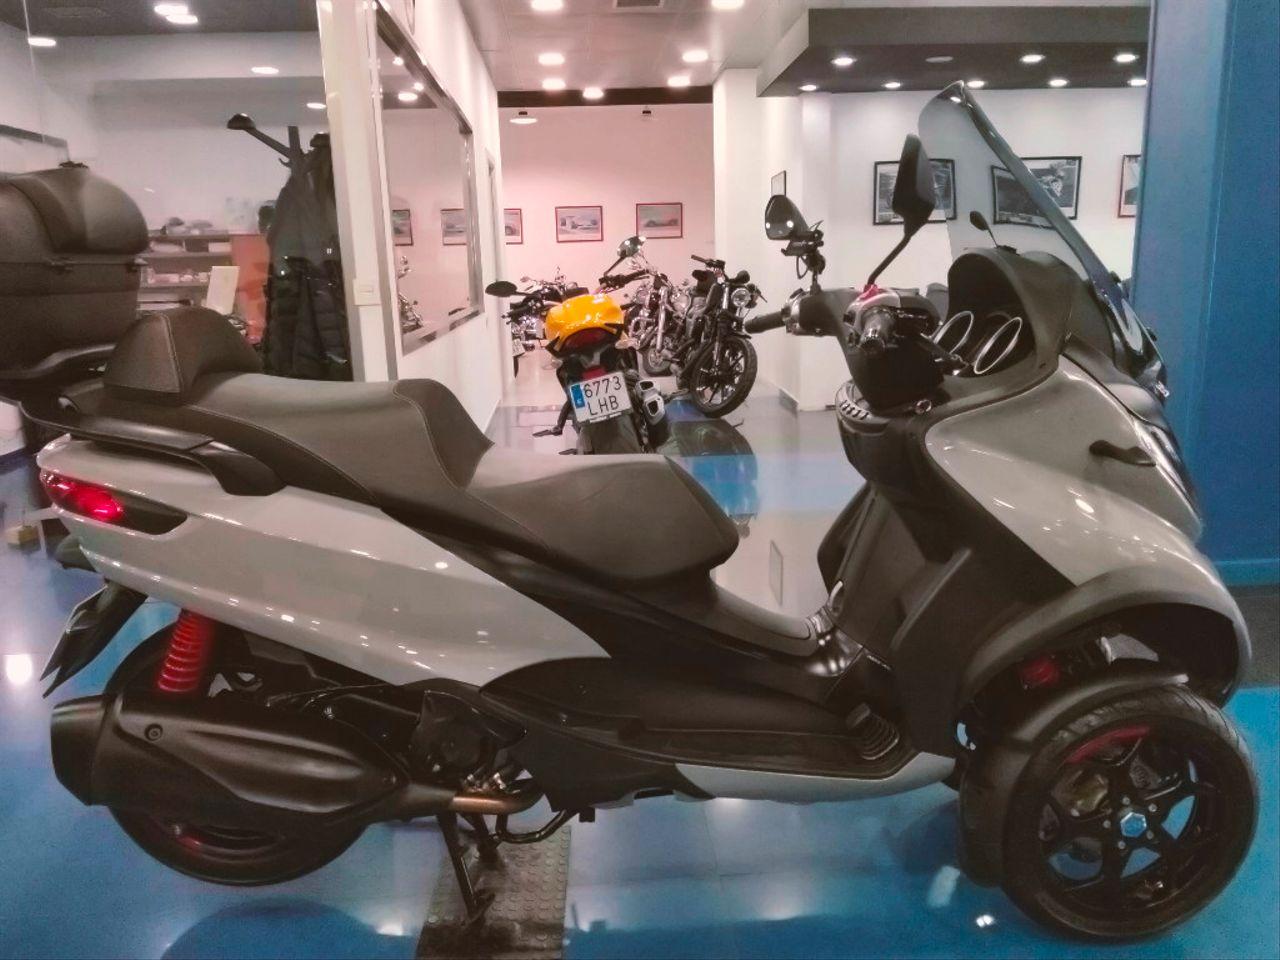 Moto PIAGGIO MP3 350 de seguna mano del año 2019 en Málaga